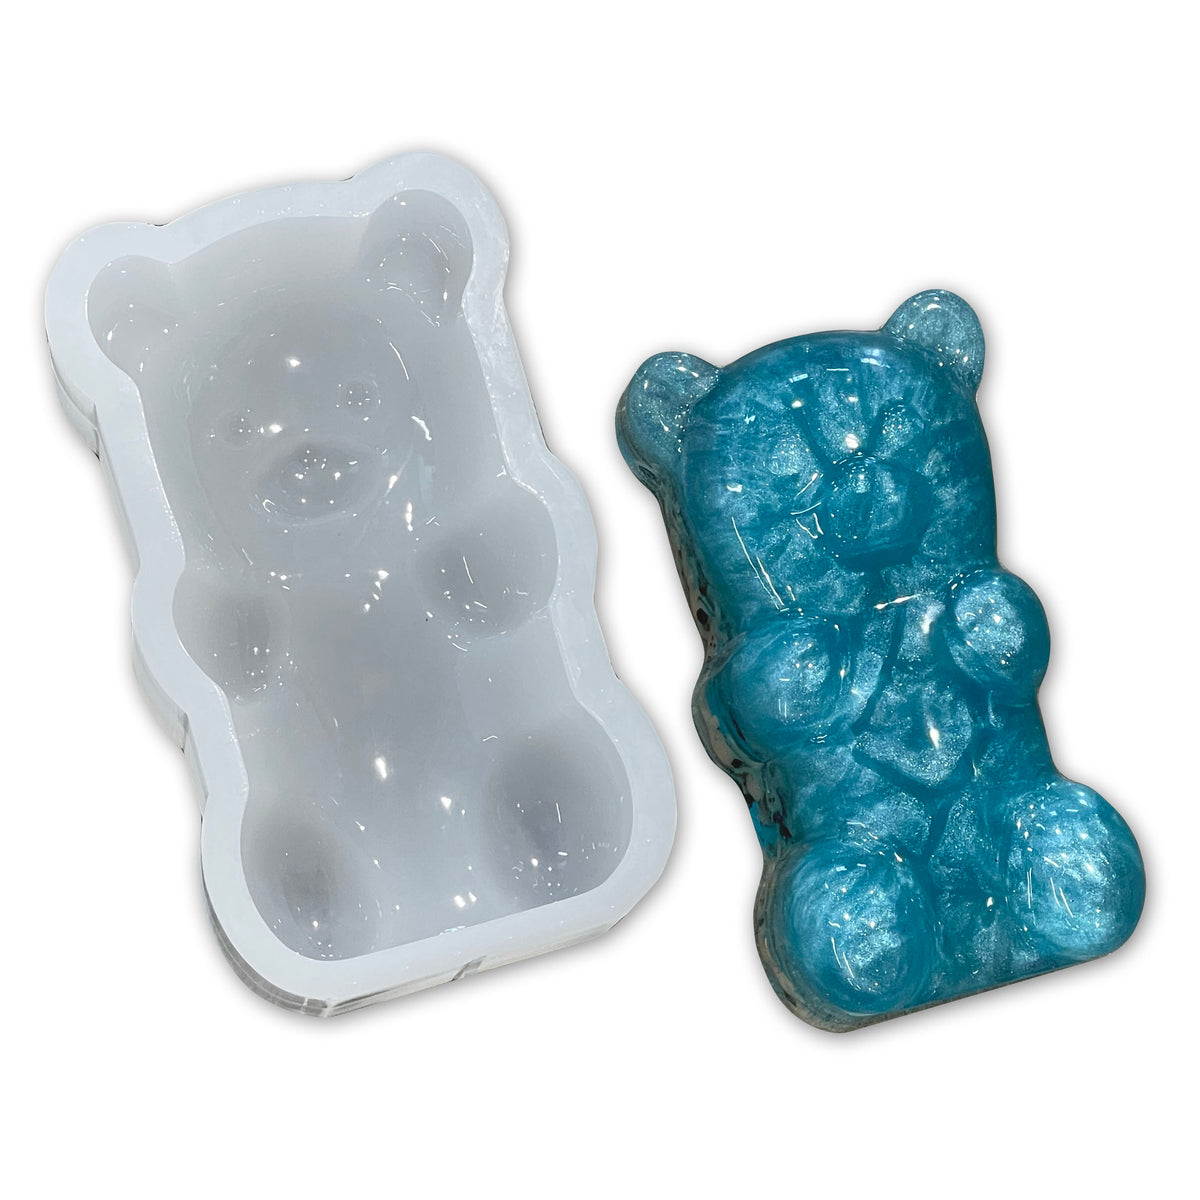 Buy Wholesale China Silicone Gummy Molds Large Gummy Bear Mold Bpa